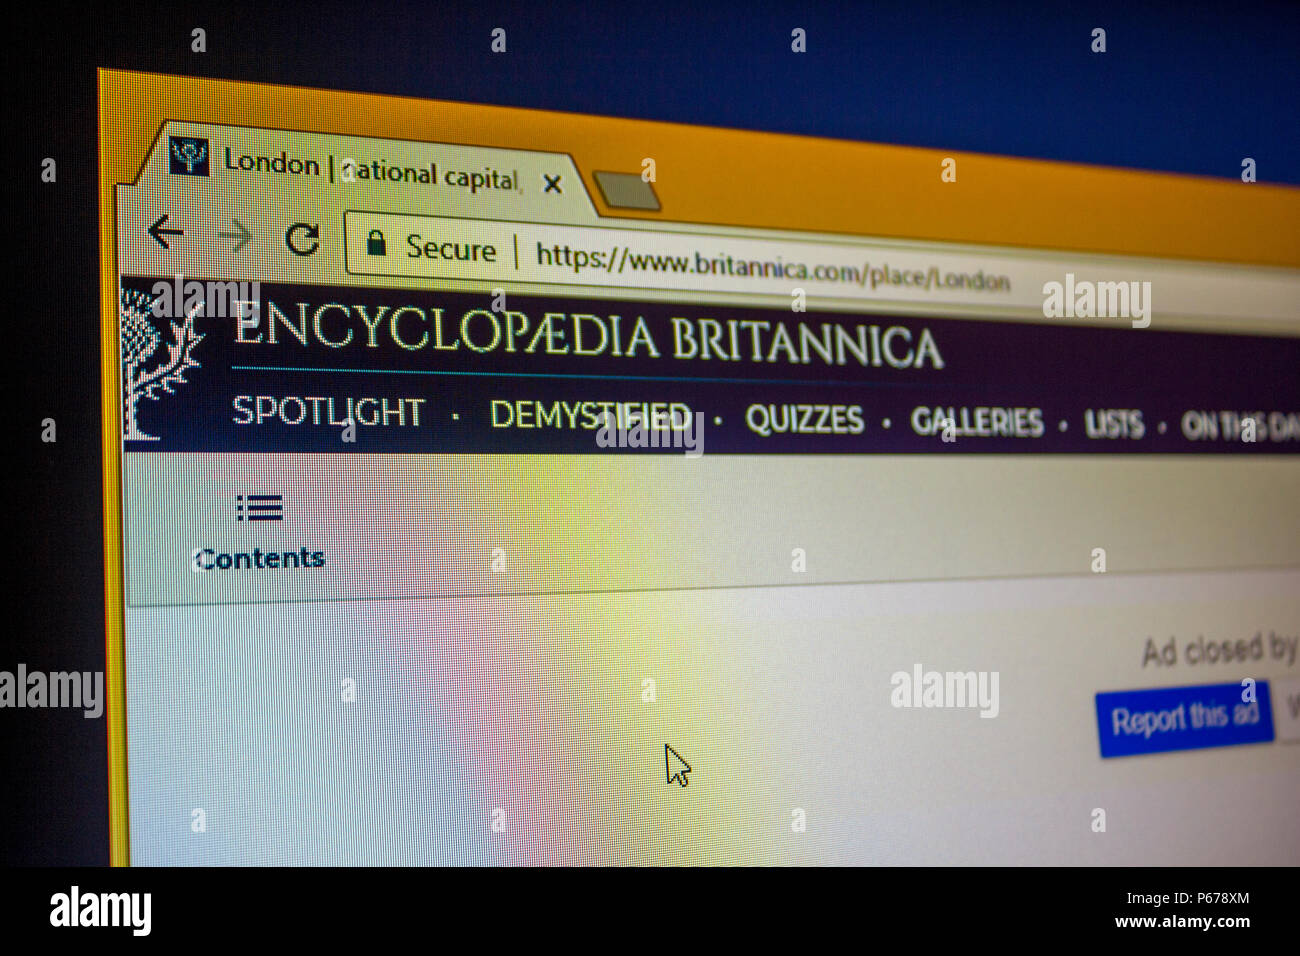 Website - Encyclopædia Britannica Stock Photo